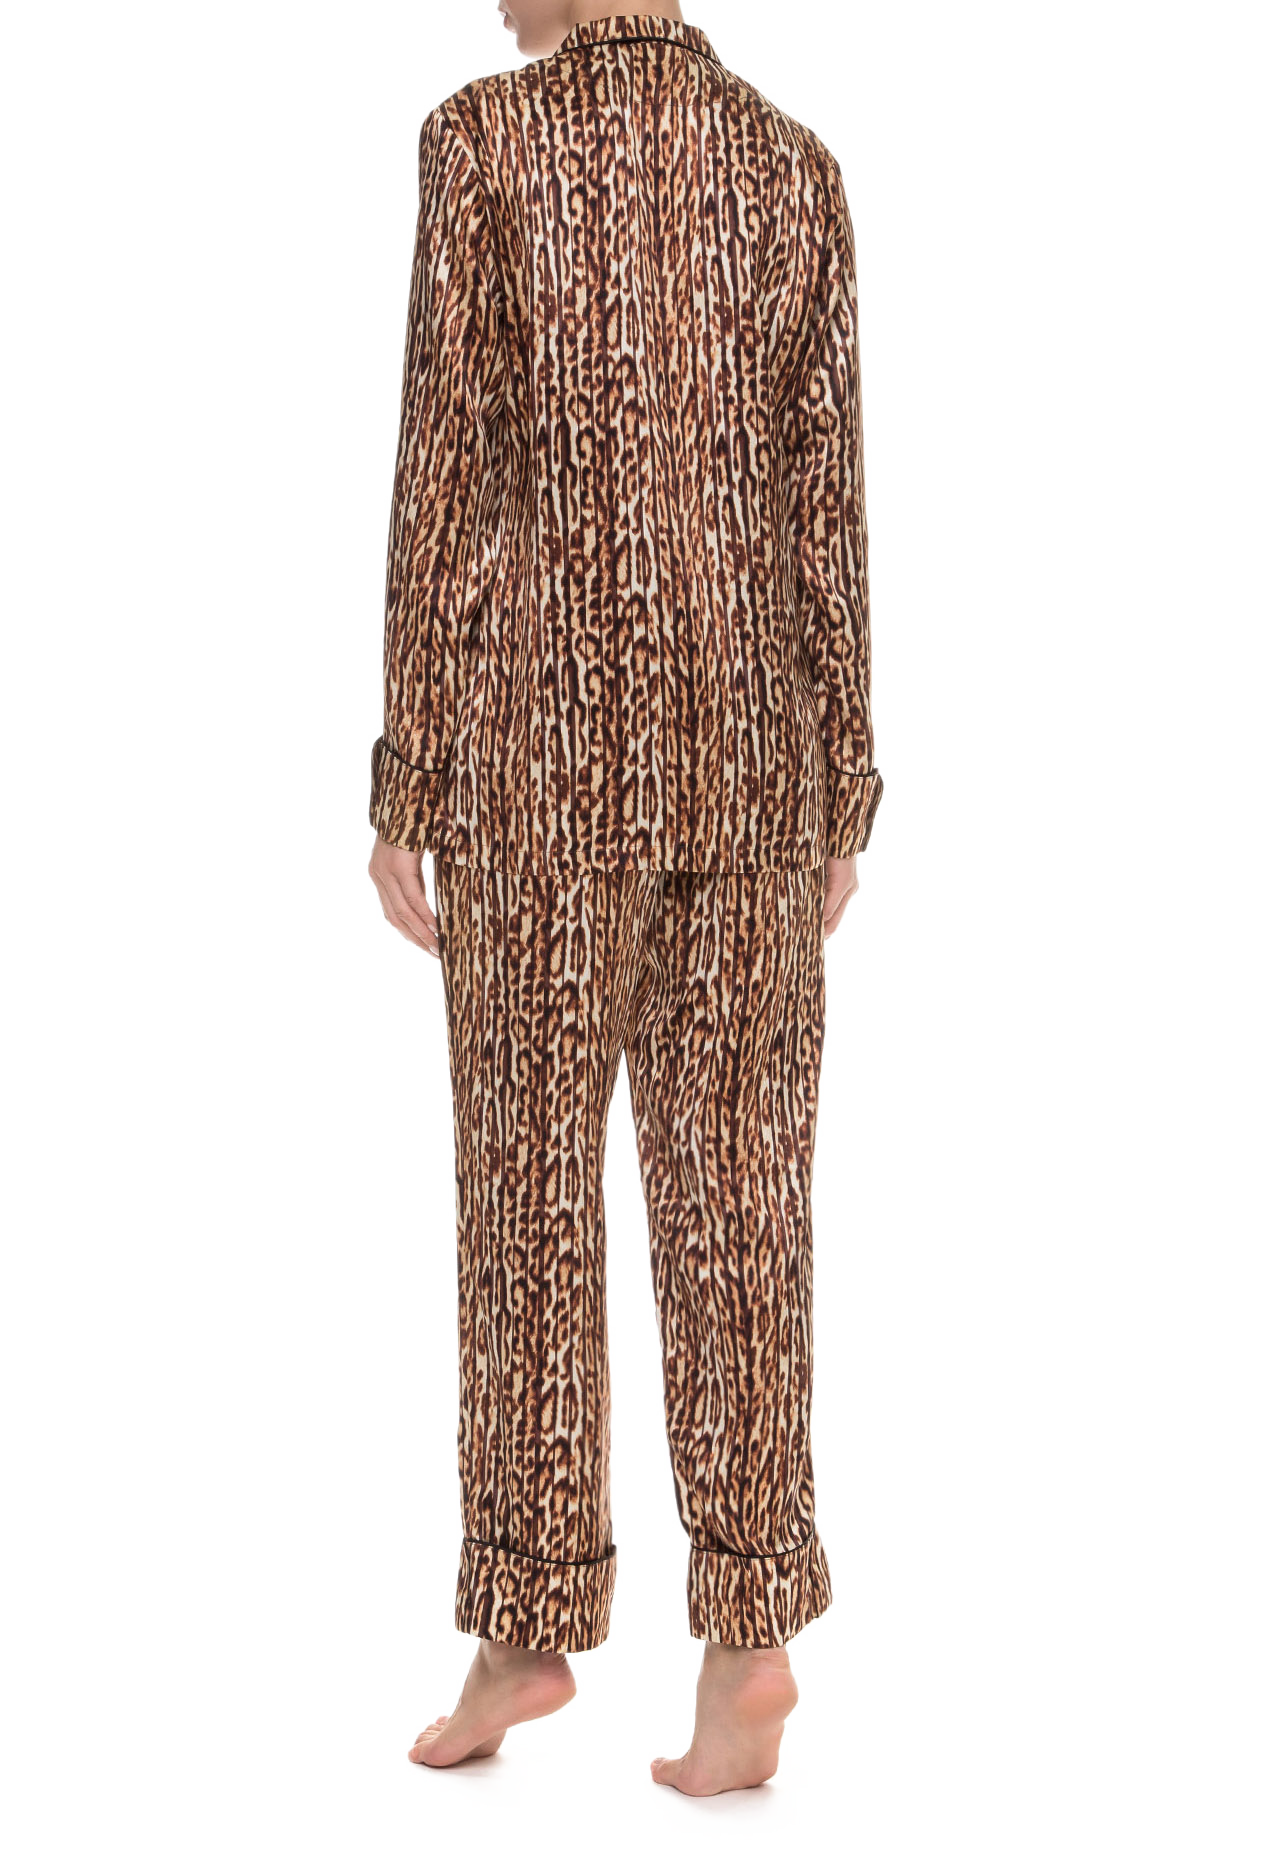 Пижамный костюм с штанами Suavite-SLP240-SV-PR-Grace-W